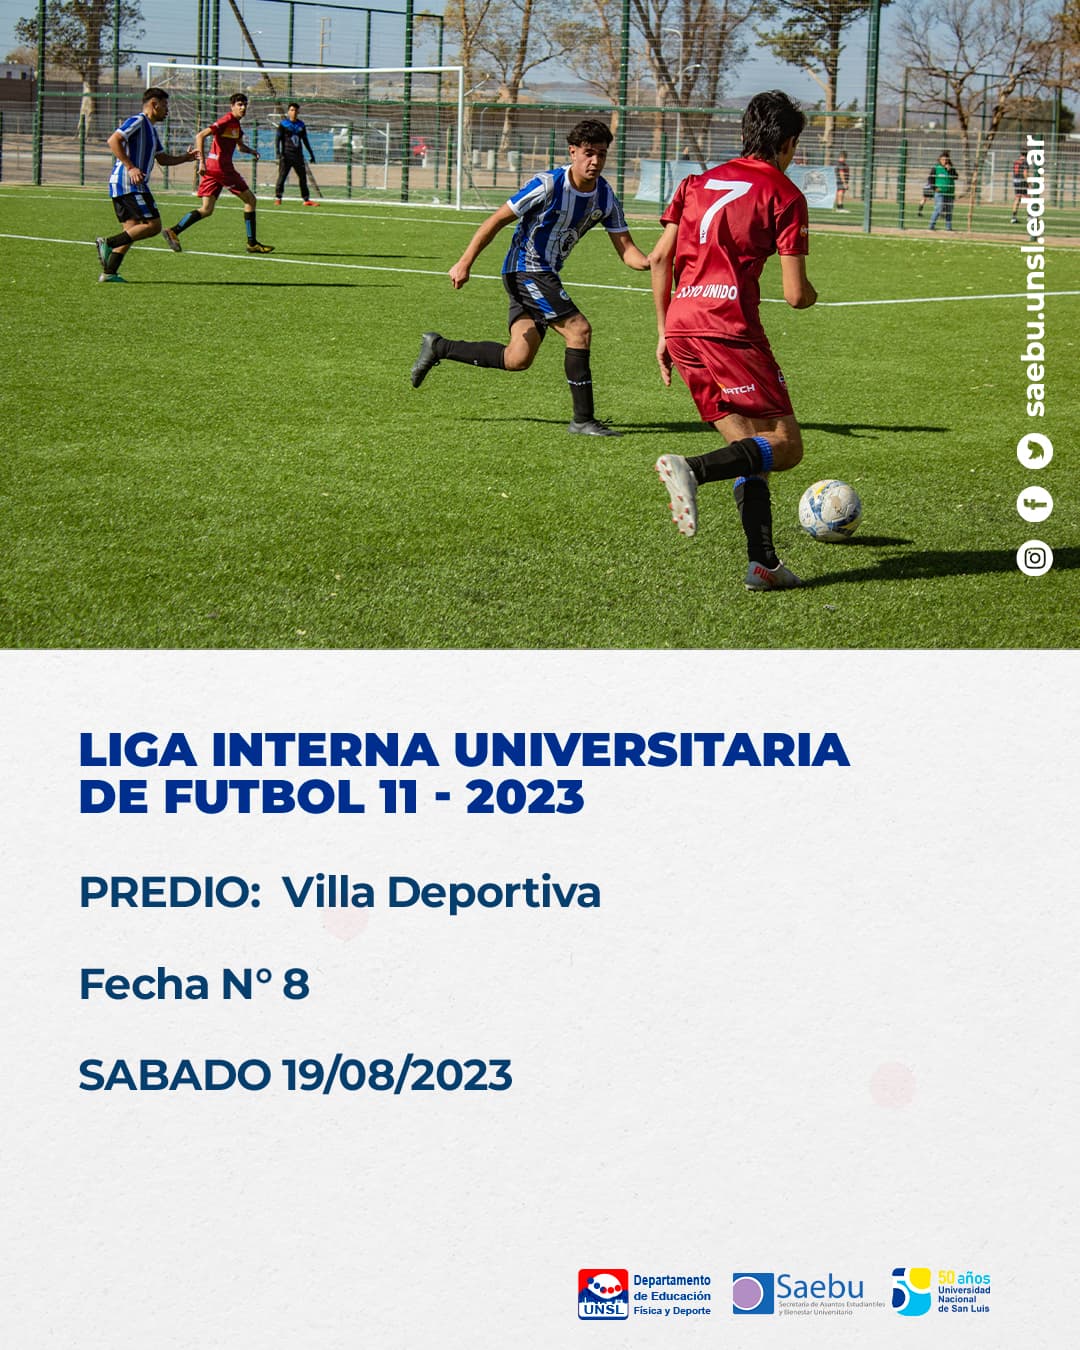 jornada de la Liga Interna Universitaria de Fútbol 11 - 2023